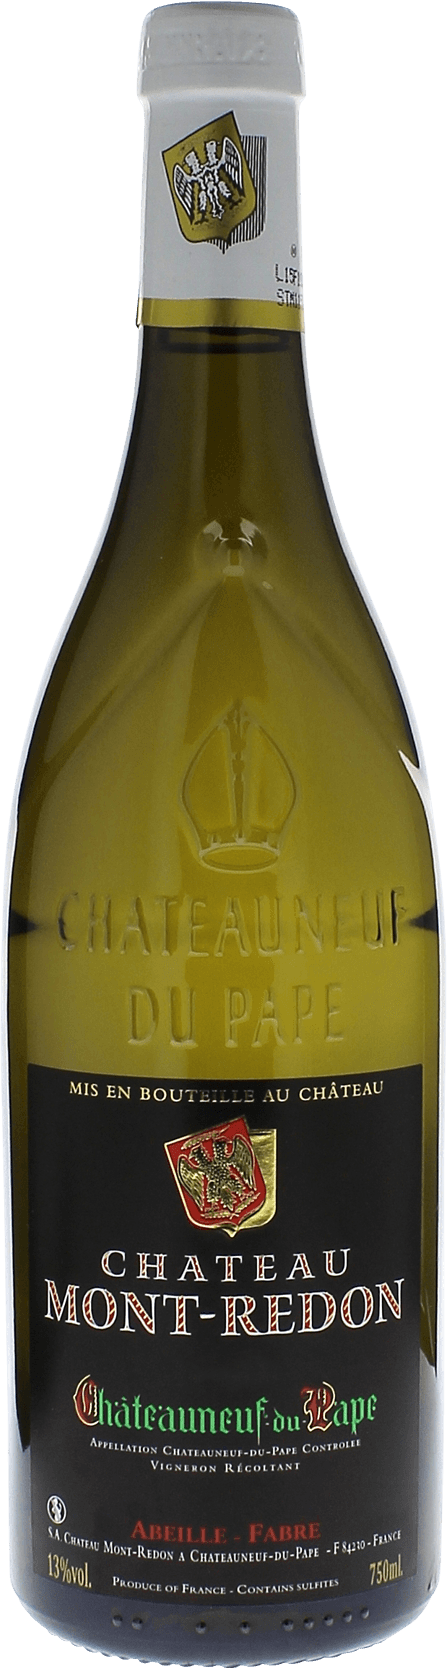 Chateauneuf-du-pape blanc mont-redon 2018  Chteauneuf-du-Pape, Valle du Rhne Blanc